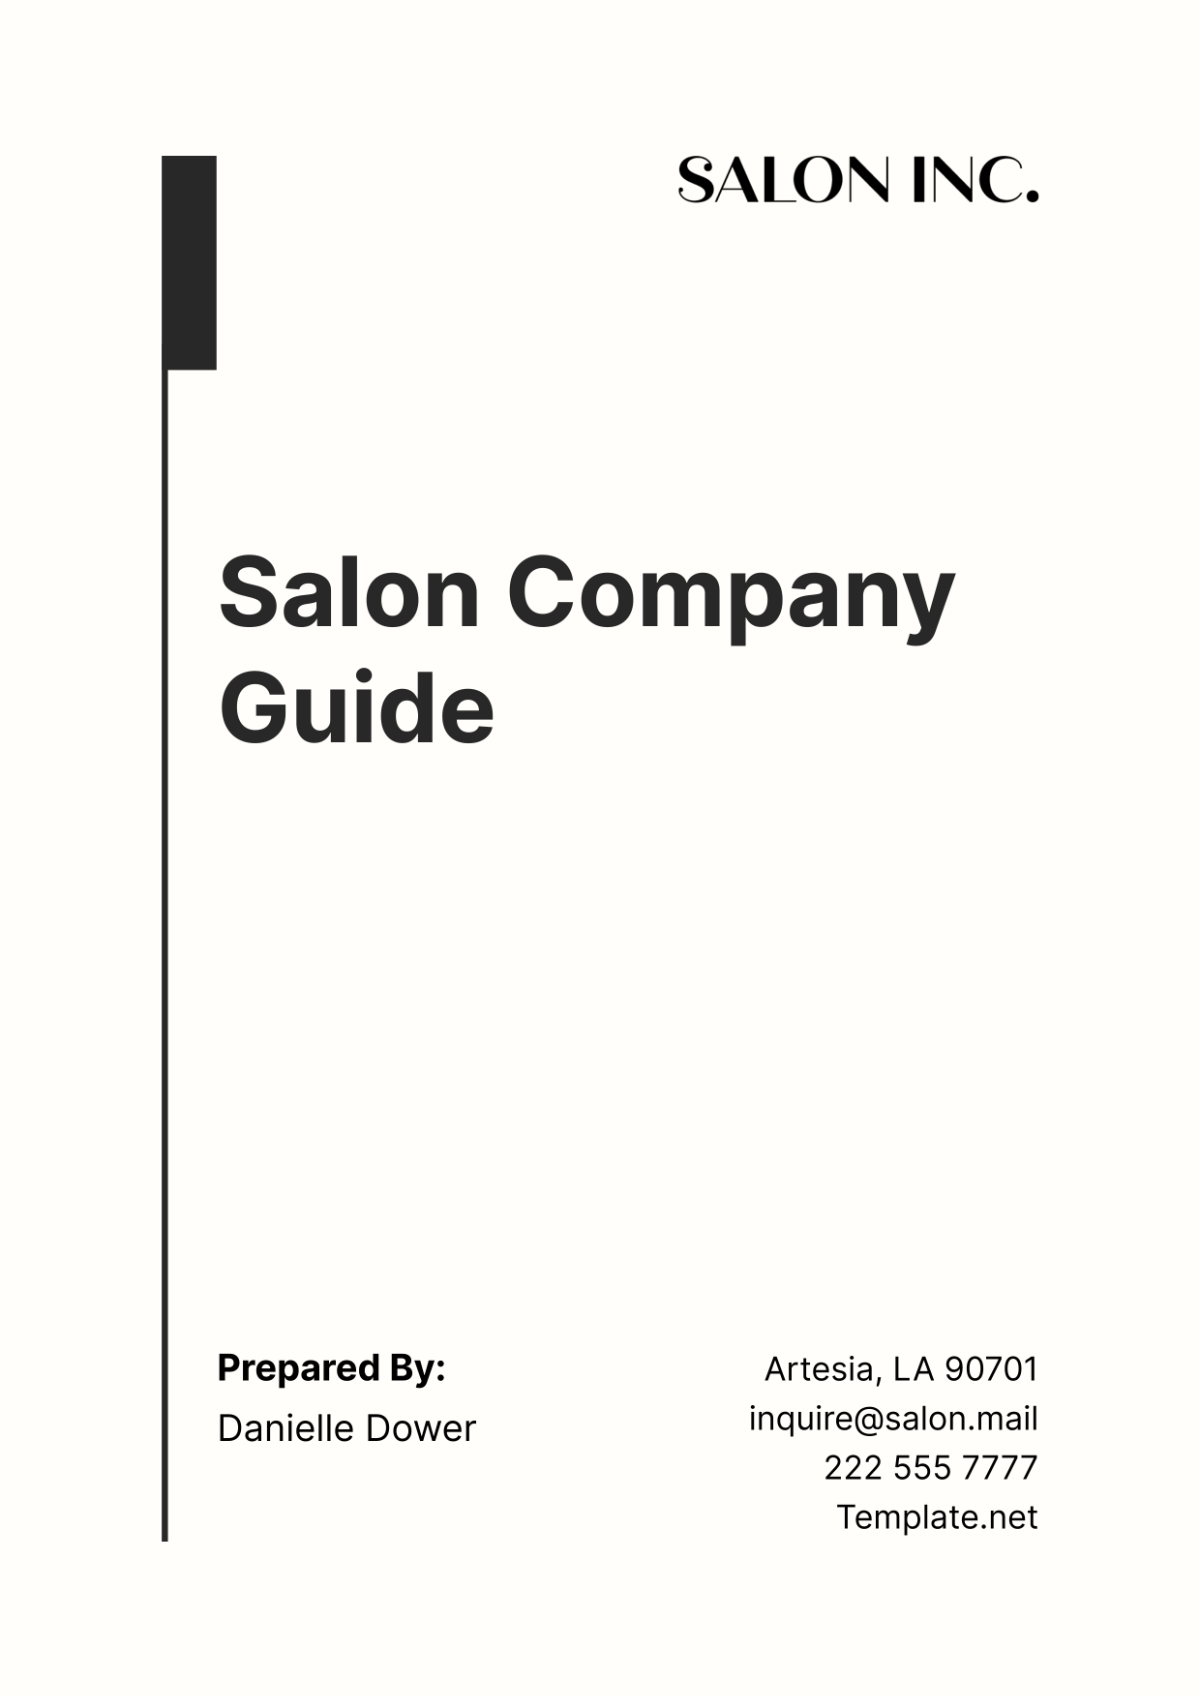 Free Salon Company Guide Template